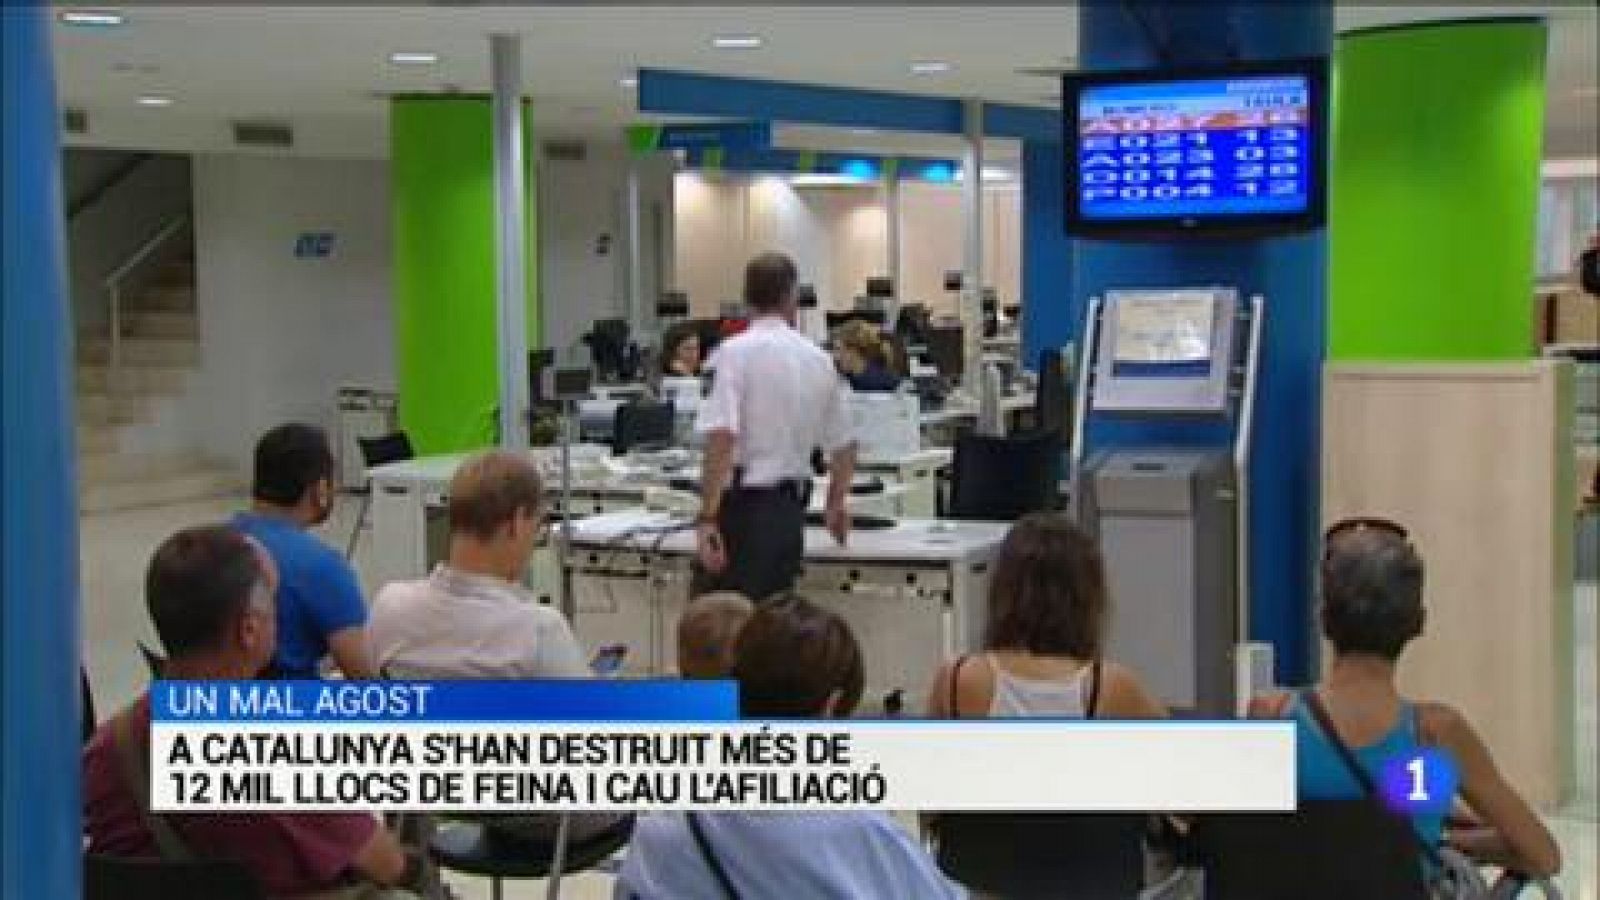 L'Informatiu | Sumari de les notícies del 03/09/2019 - RTVE.es